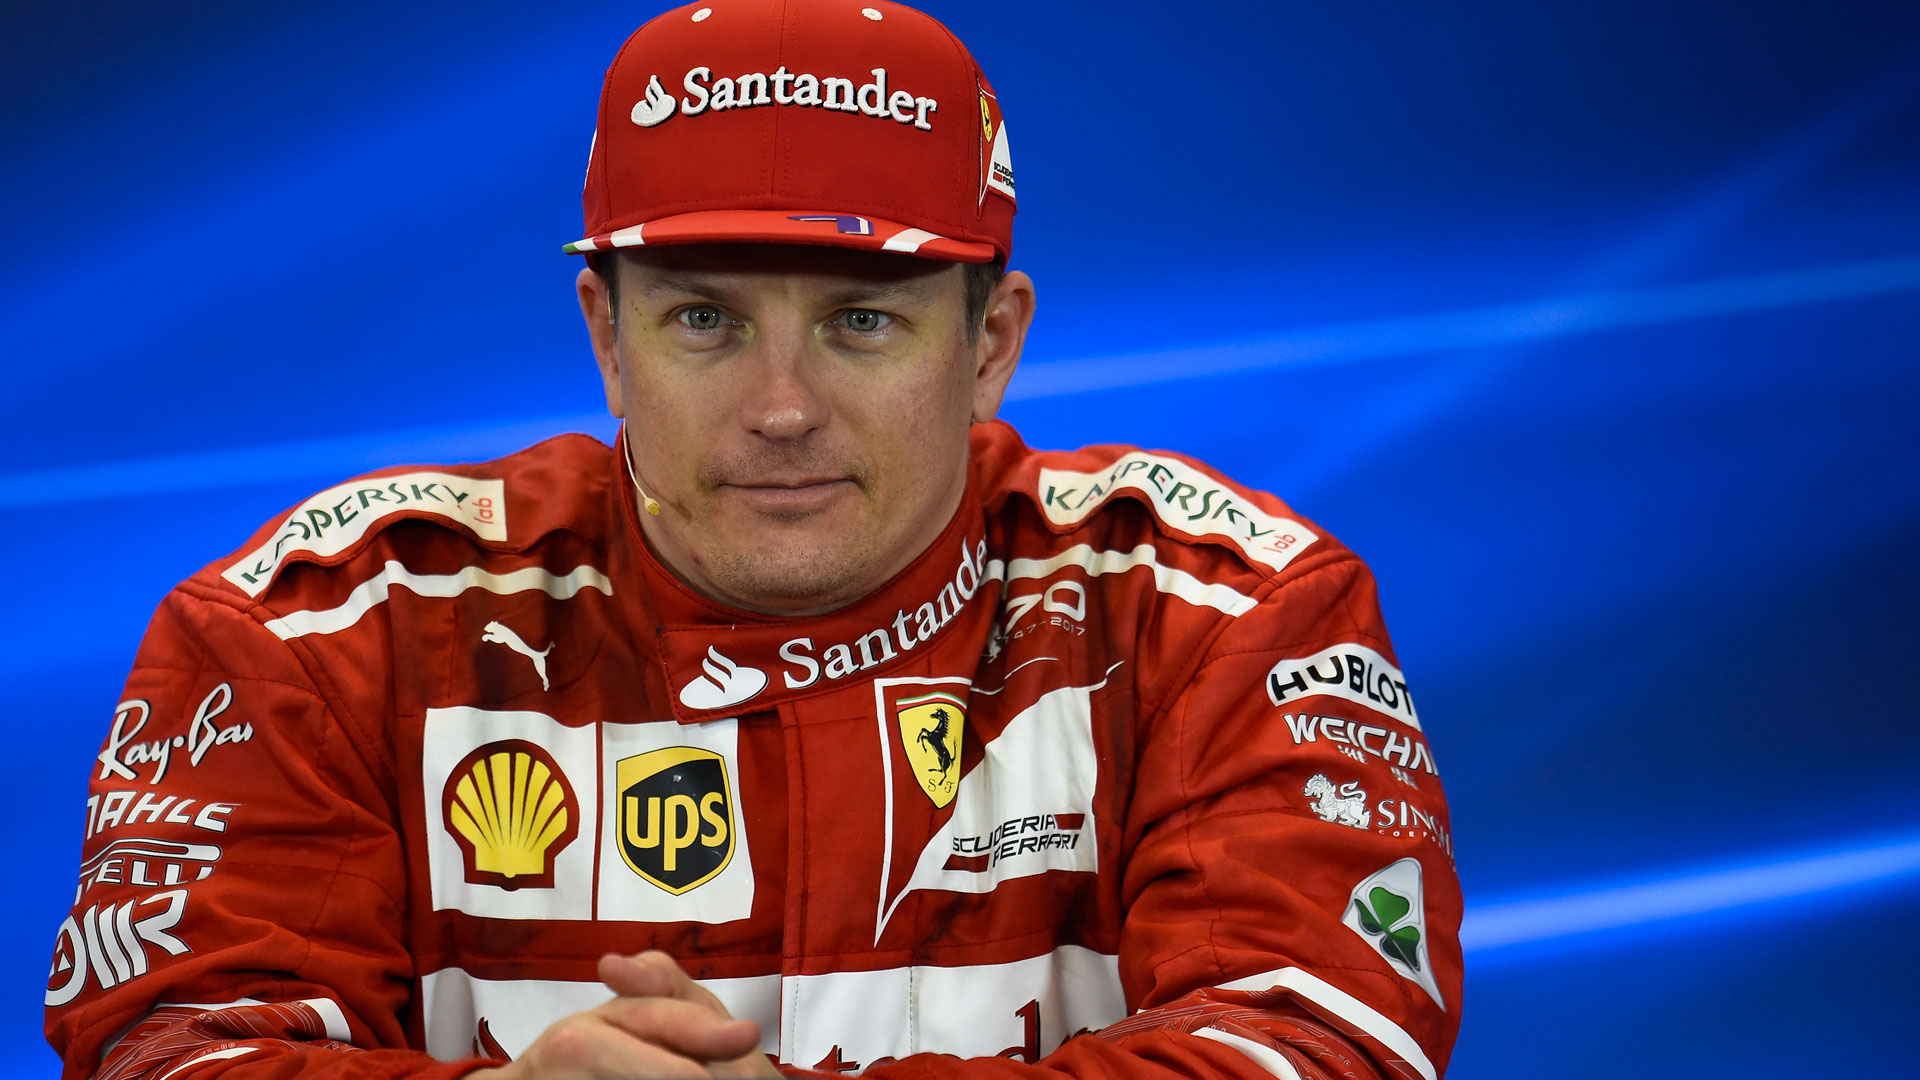 Photo du pilote Kimi Räikkönen